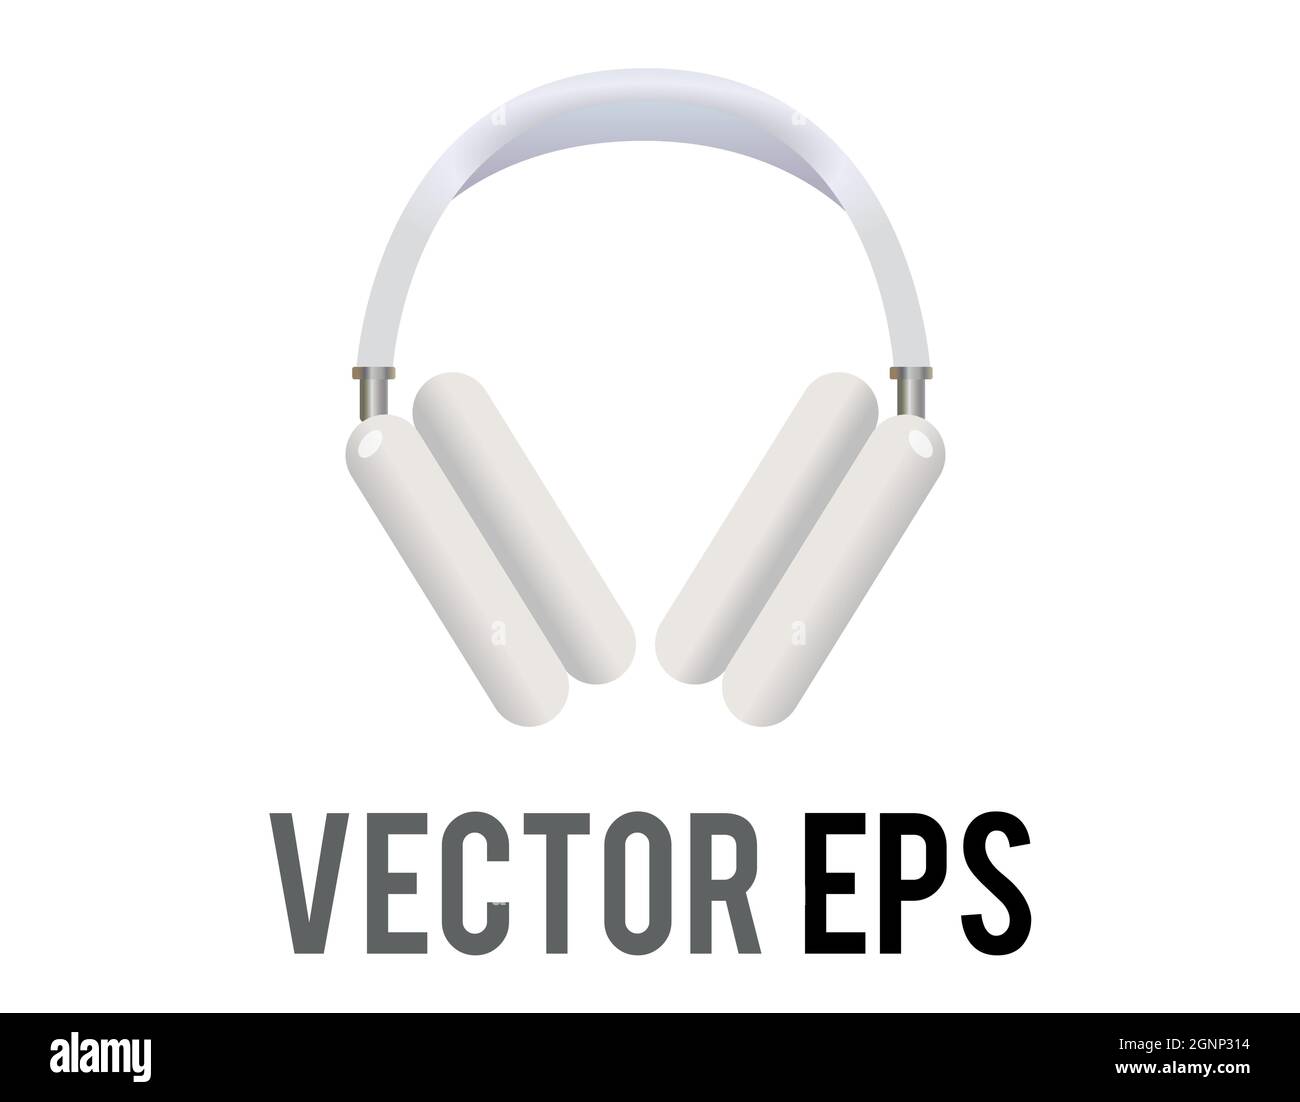 L'icône de casque d'écoute à vecteur blanc isolée, utilisée pour écouter de la musique ou d'autres sons Illustration de Vecteur